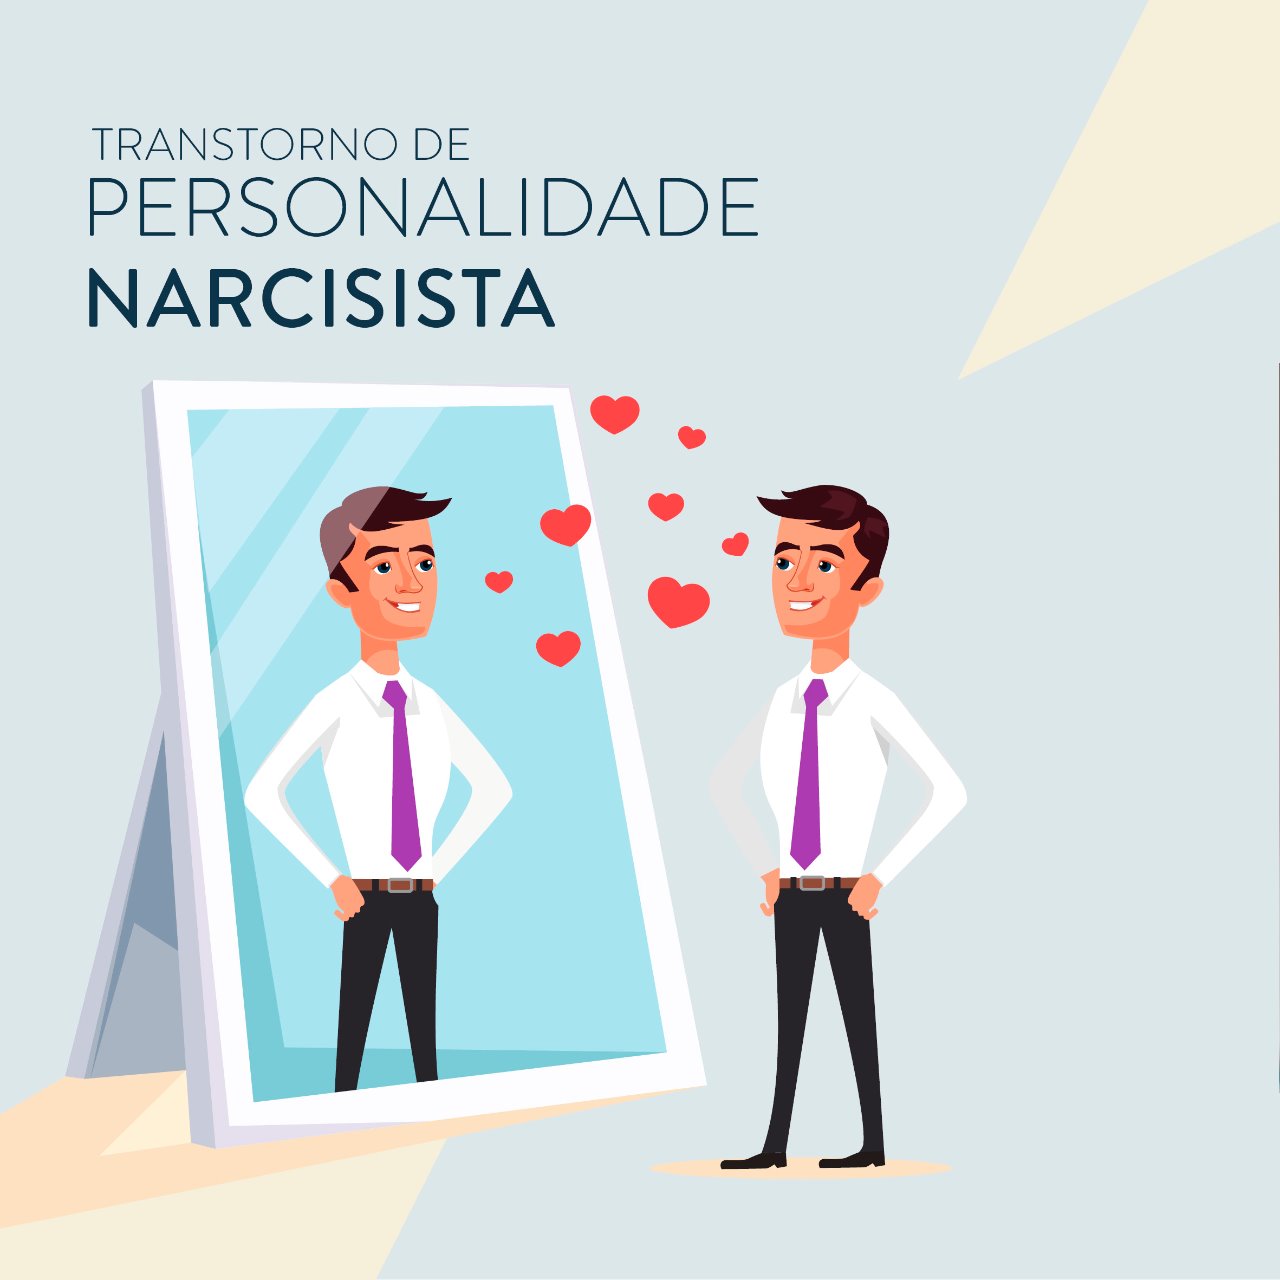 Transtorno de personalidade narcisista